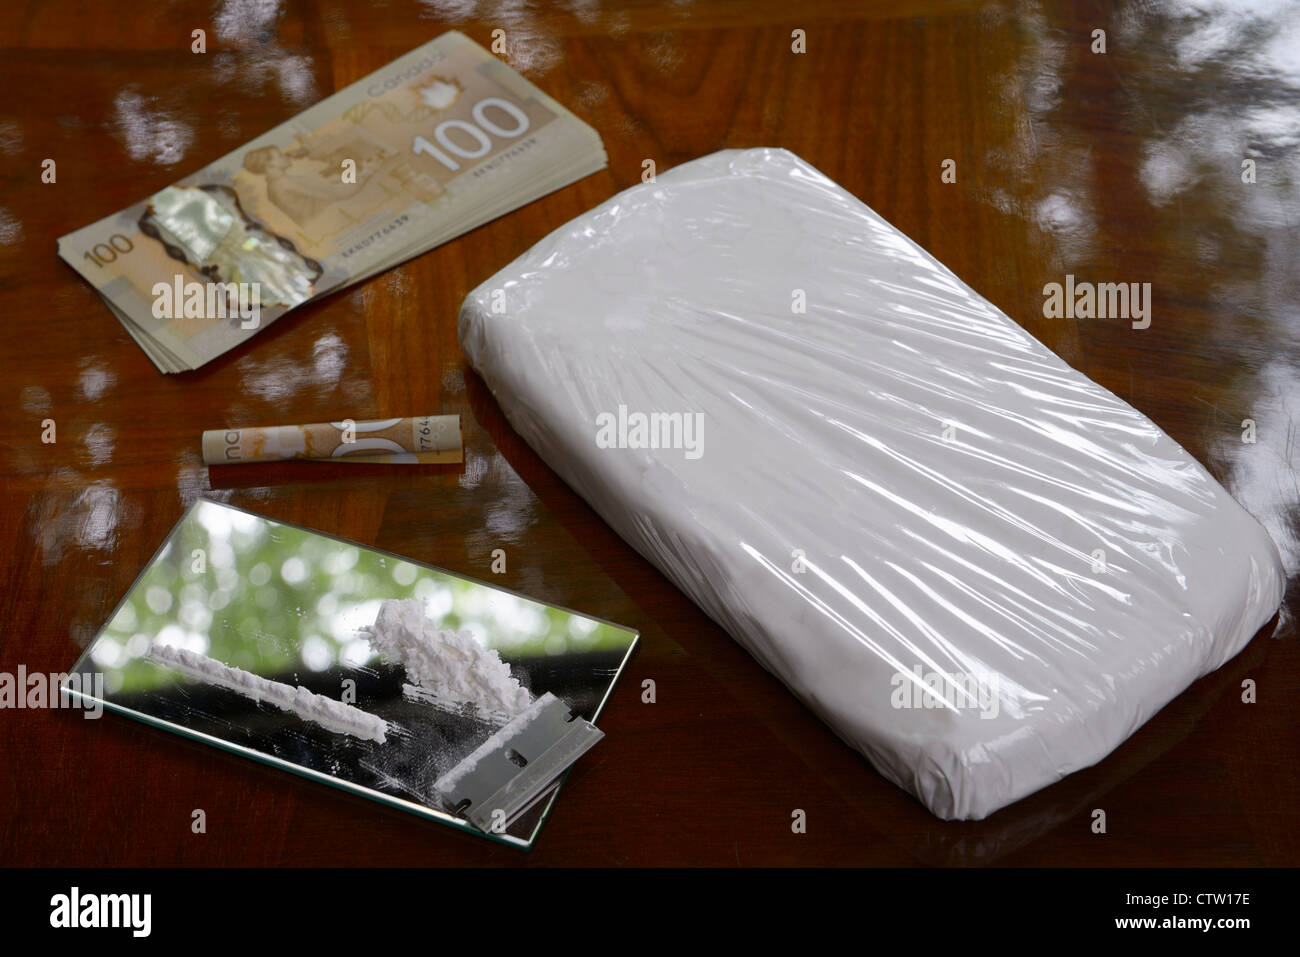 Große Tasche von Kokain Drogen mit hundert-Dollar-kanadische Rechnungen Cash Geld und Koks-Linie mit Rasierklinge auf Tisch Stockfoto